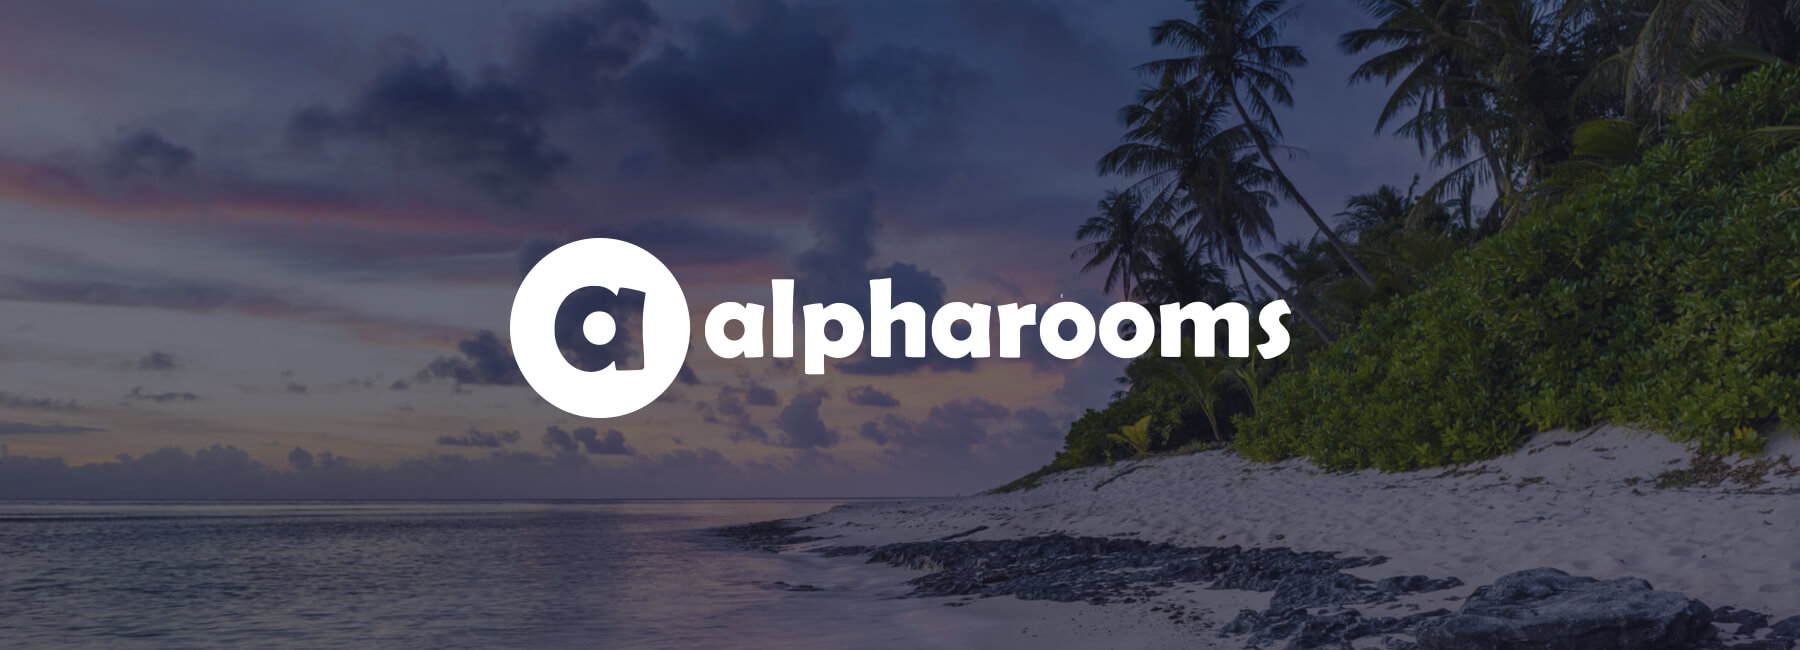 Alpharooms wählt die Mopinion Software für Initiativen zur Kundenzufriedenheit